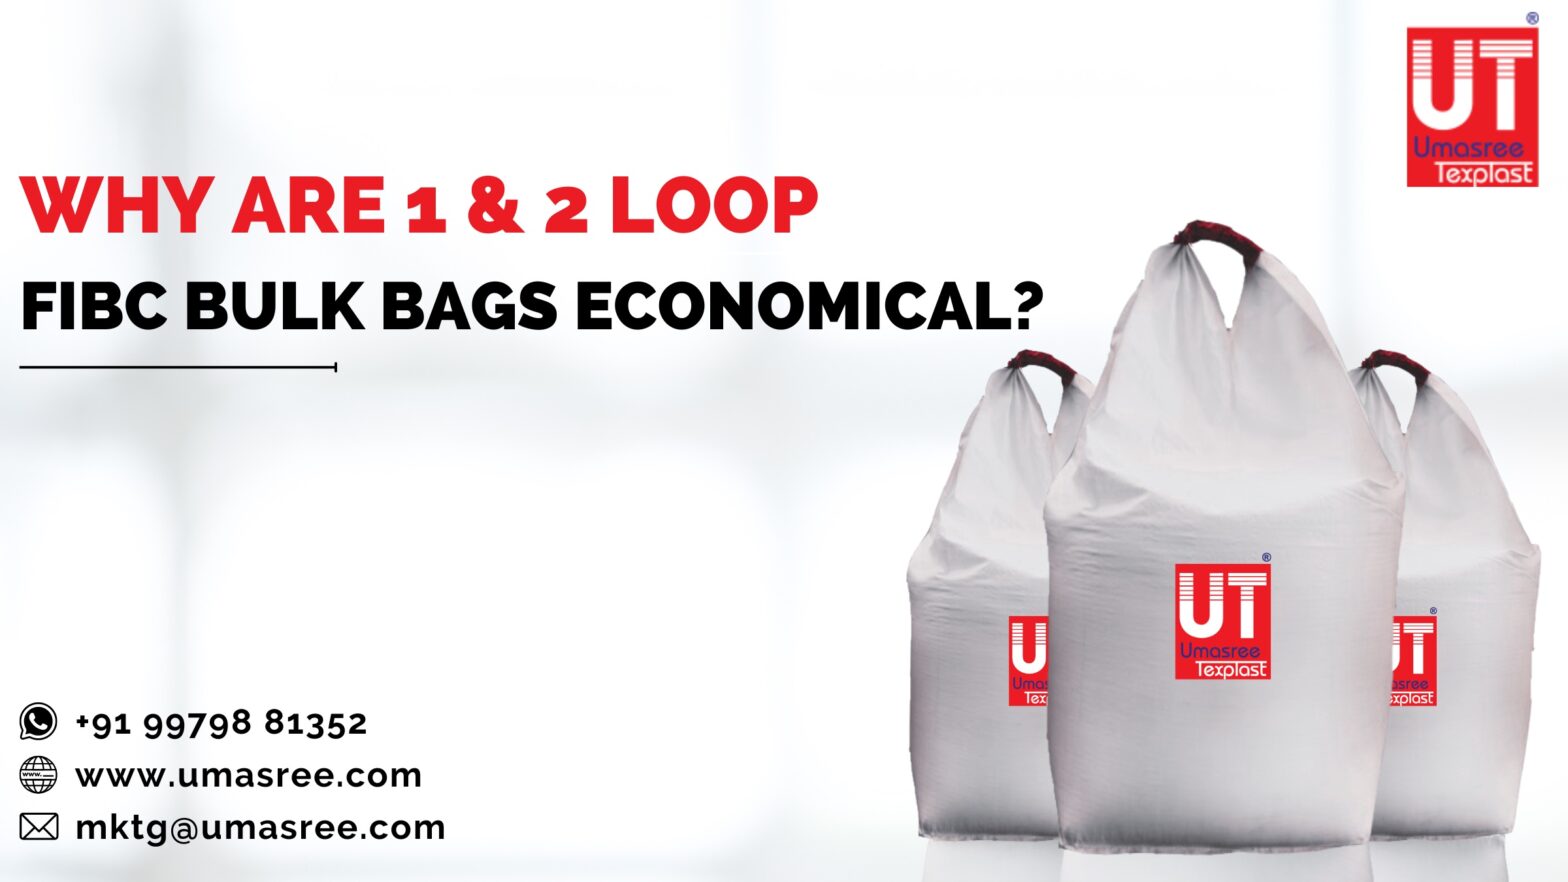 Why are 1 & 2 Loop FIBC Bulk Bags economical?